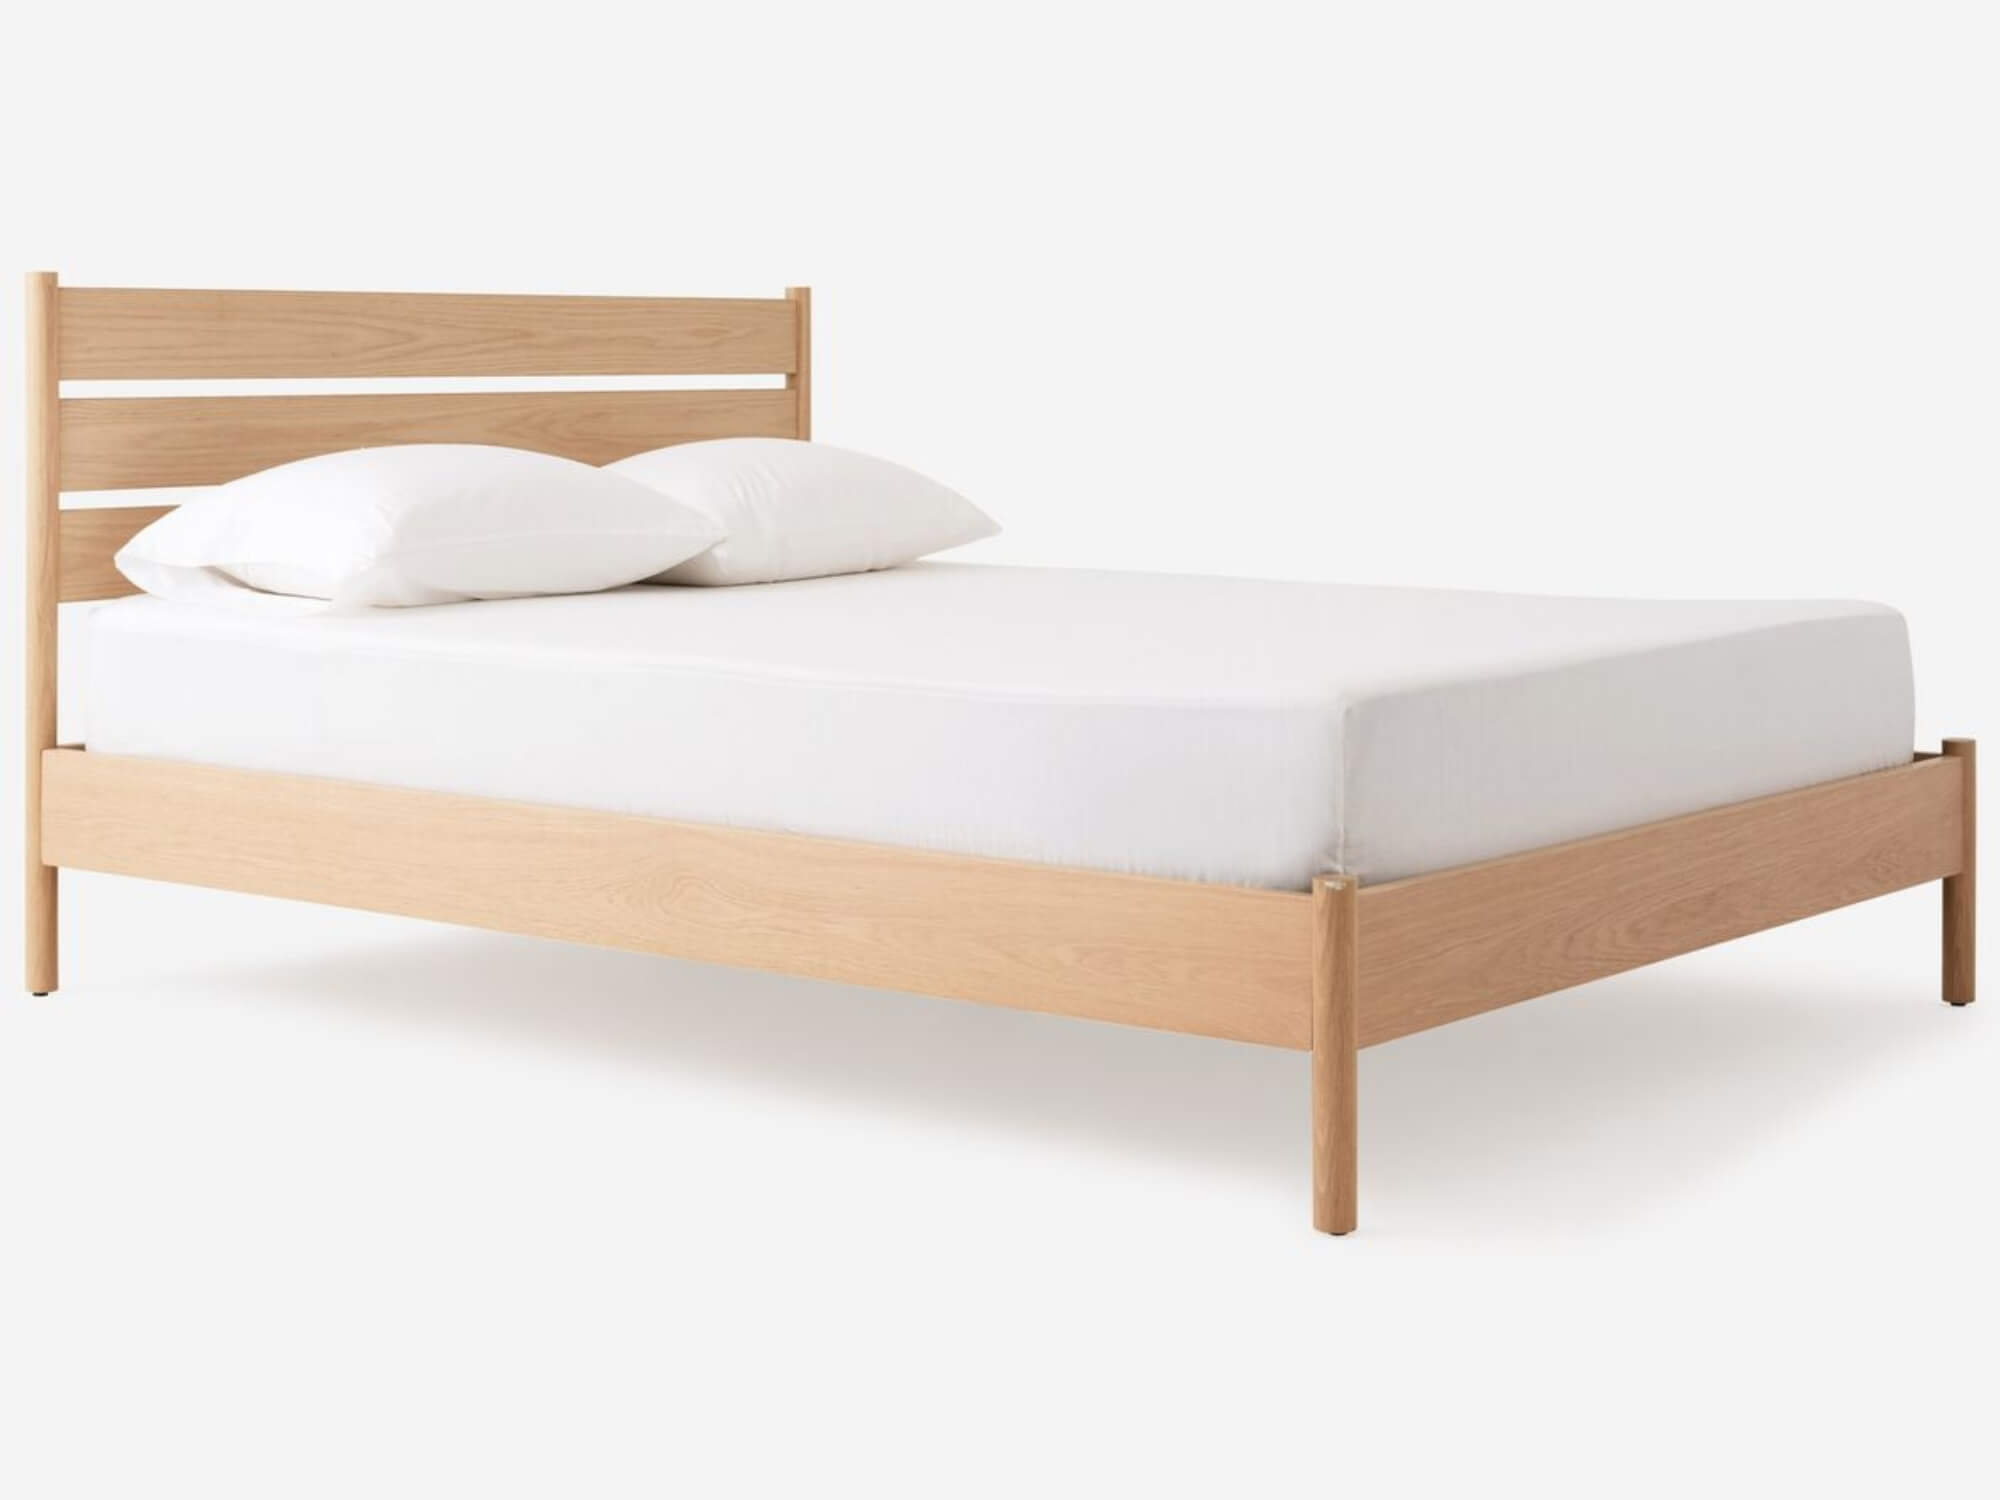 Monarch Bed Choose King Or Queen Size, Hardwood Platform Bed King